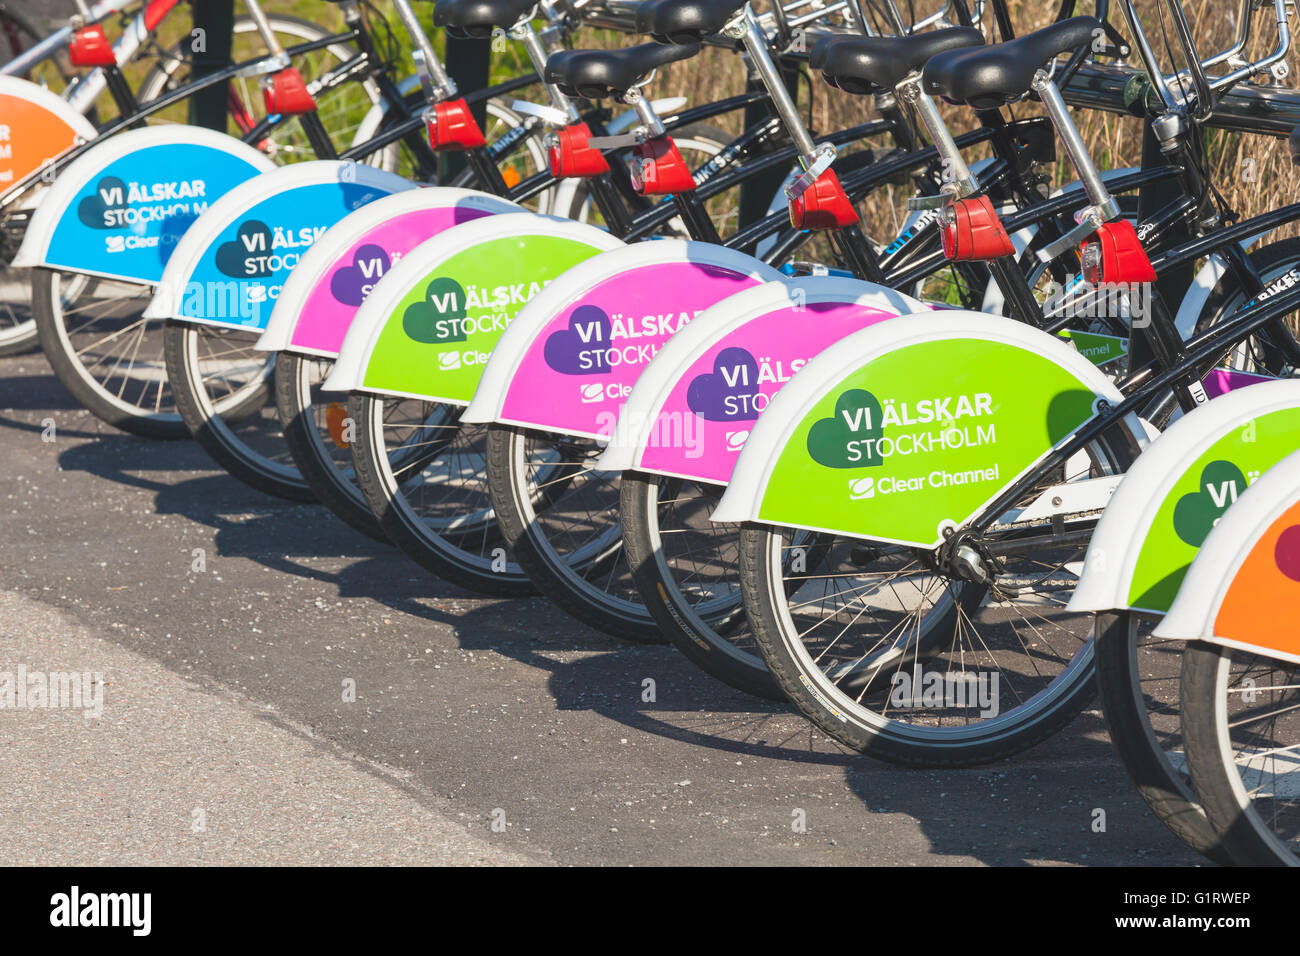 Stockholm, Schweden - 4. Mai 2016: Bunte leuchtende Fahrräder zu vermieten stehen in einer Reihe auf einem Parkplatz Stockfoto